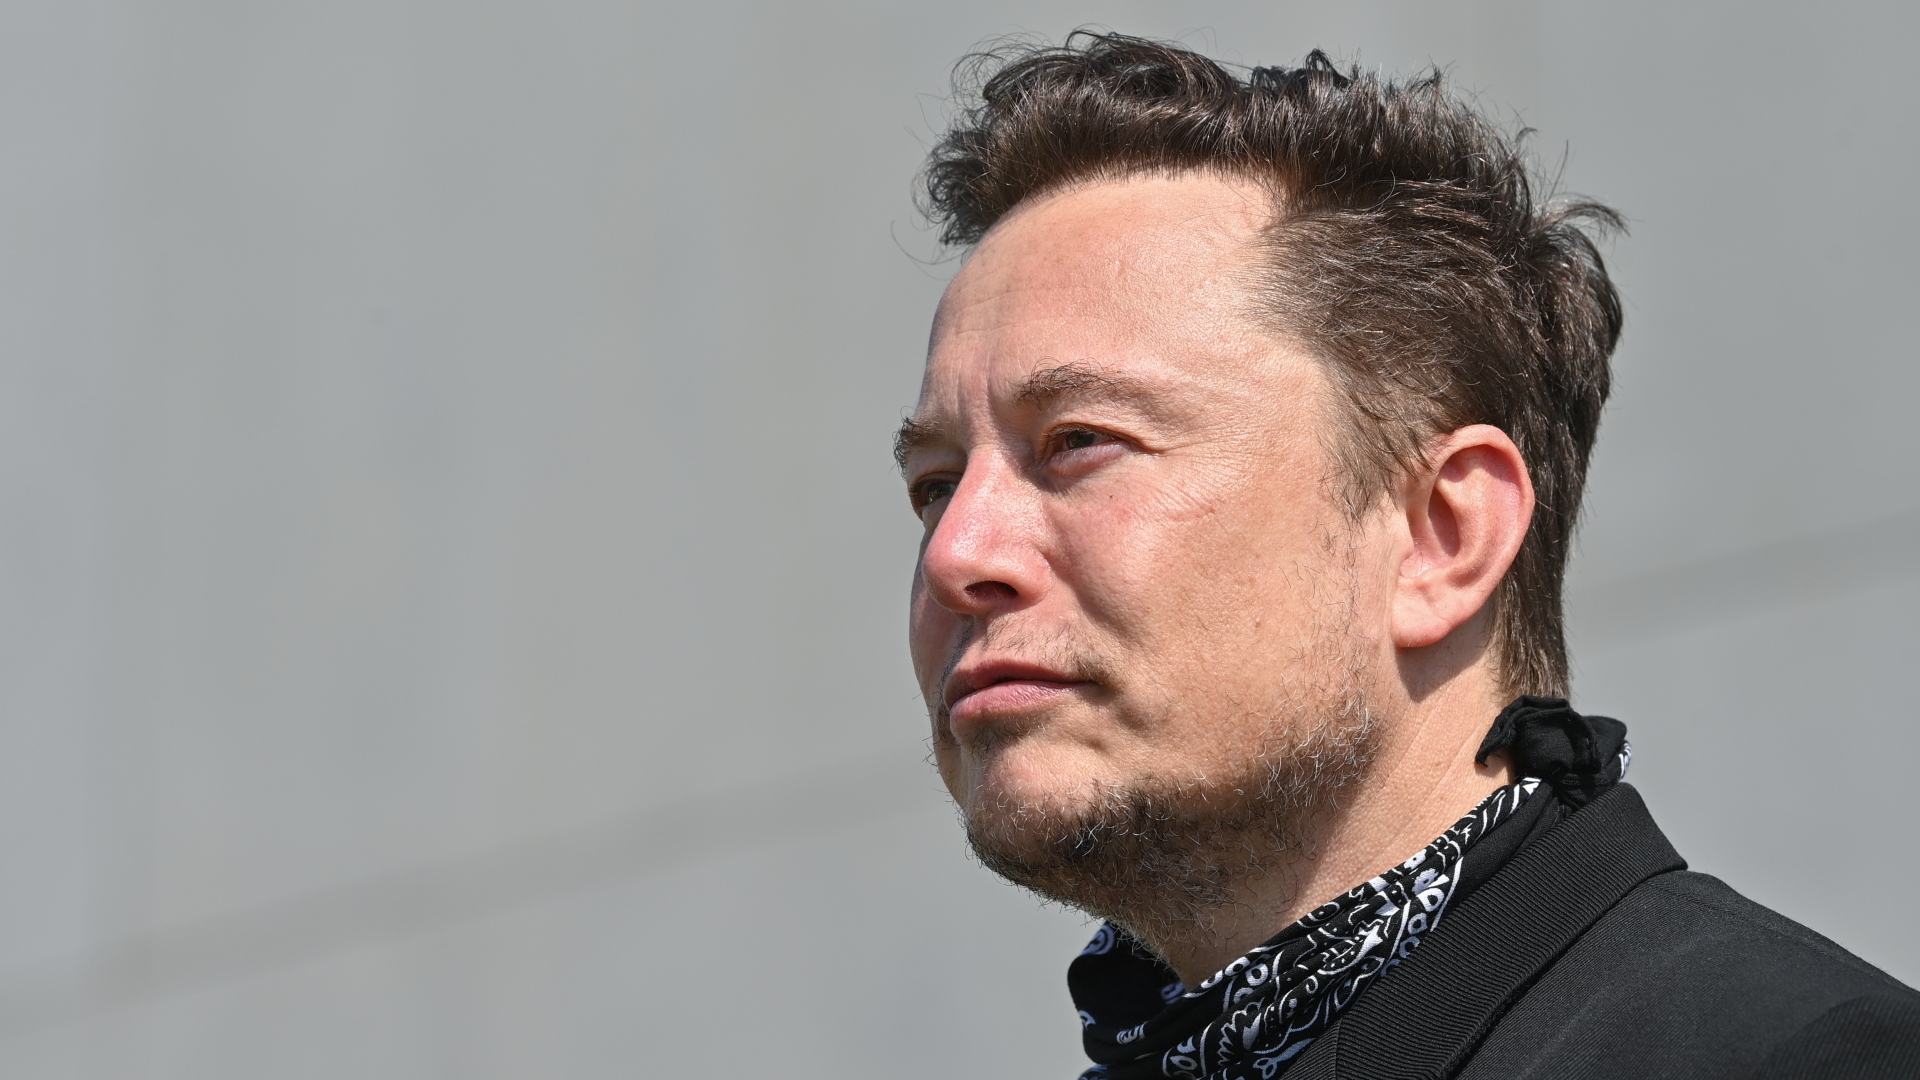 Po przejęciu Twittera: Musk chce odblokować niektórych zbanowanych użytkowników